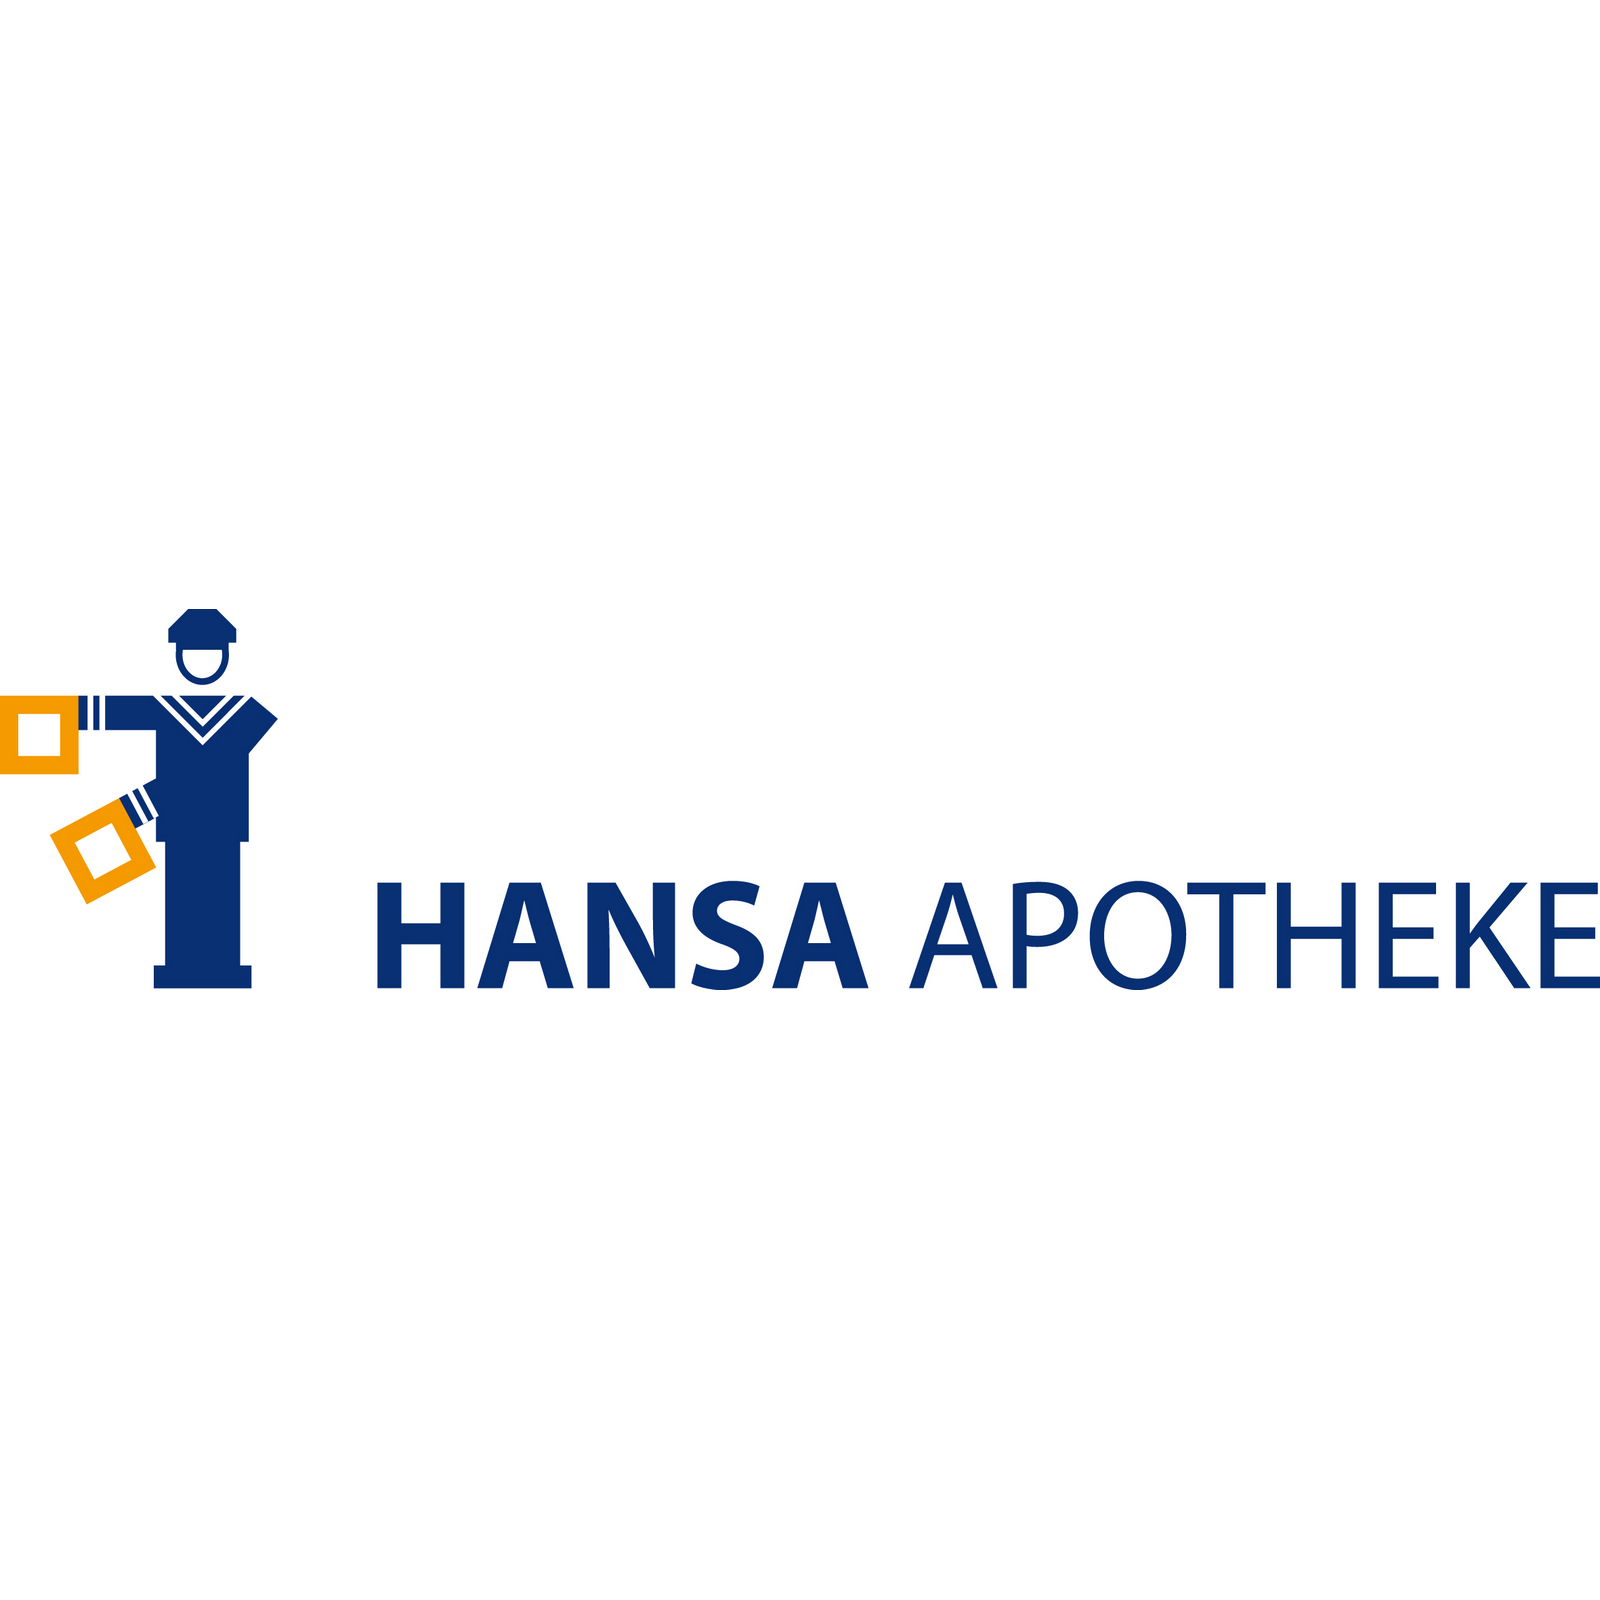 Hansa Apotheke in Münster - Logo